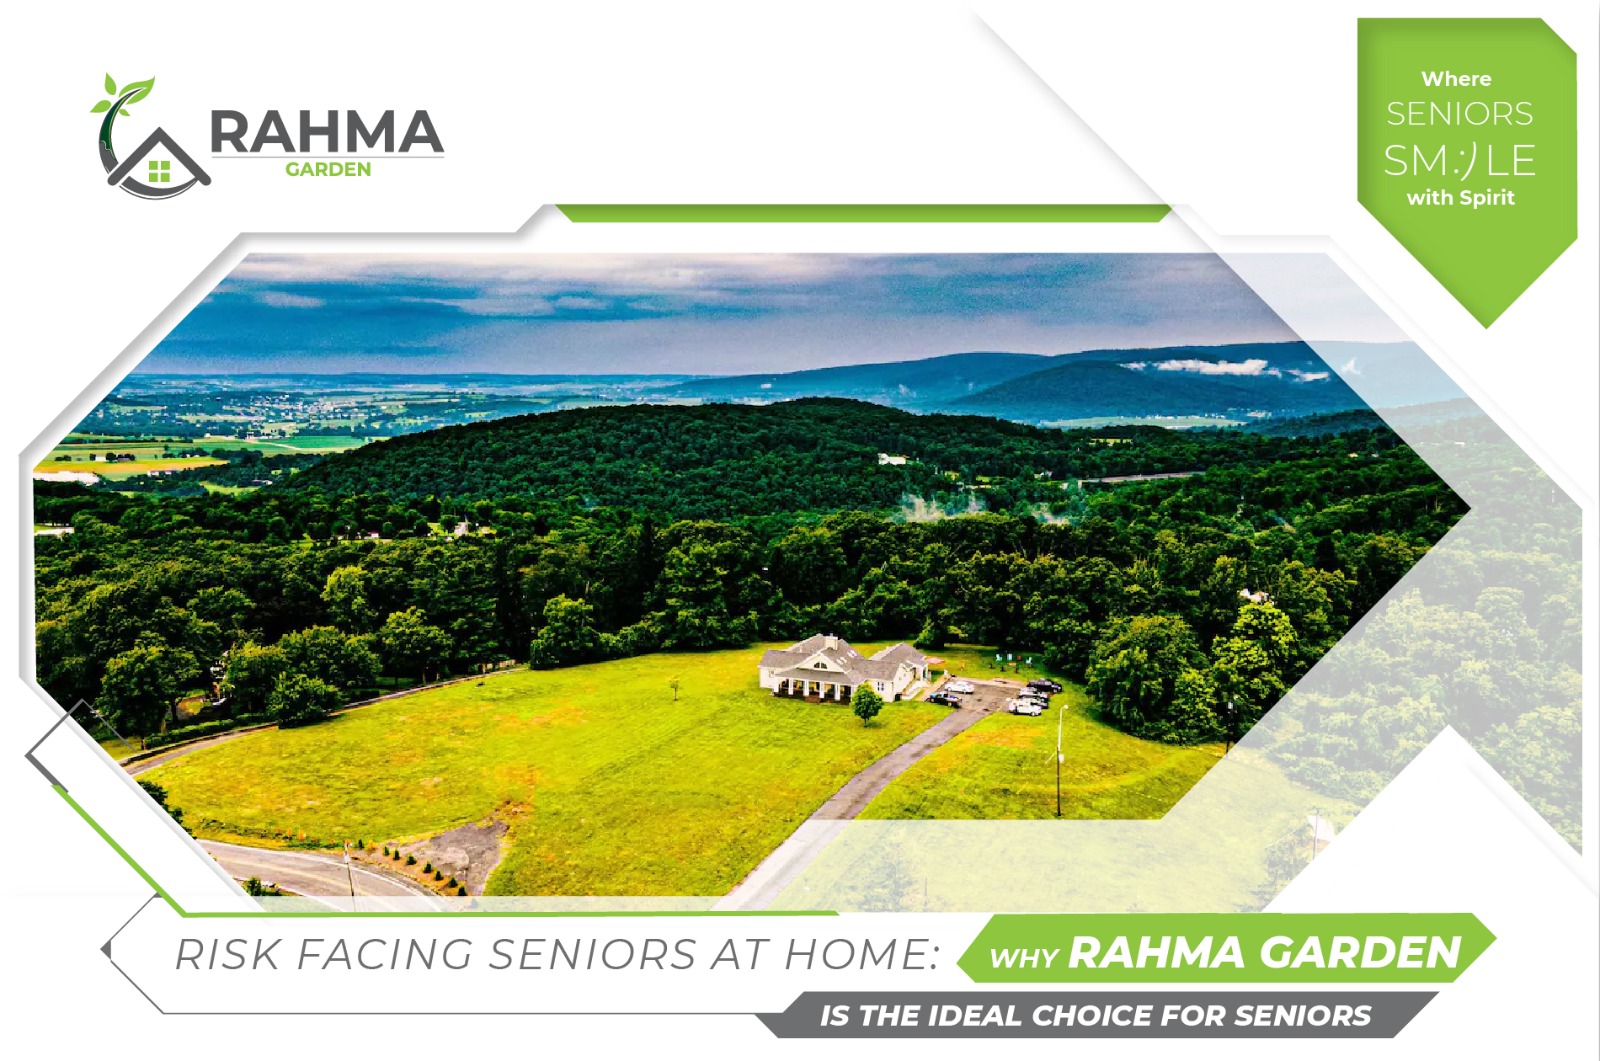 Rahma Garden is the Ideal Choice for Seniors